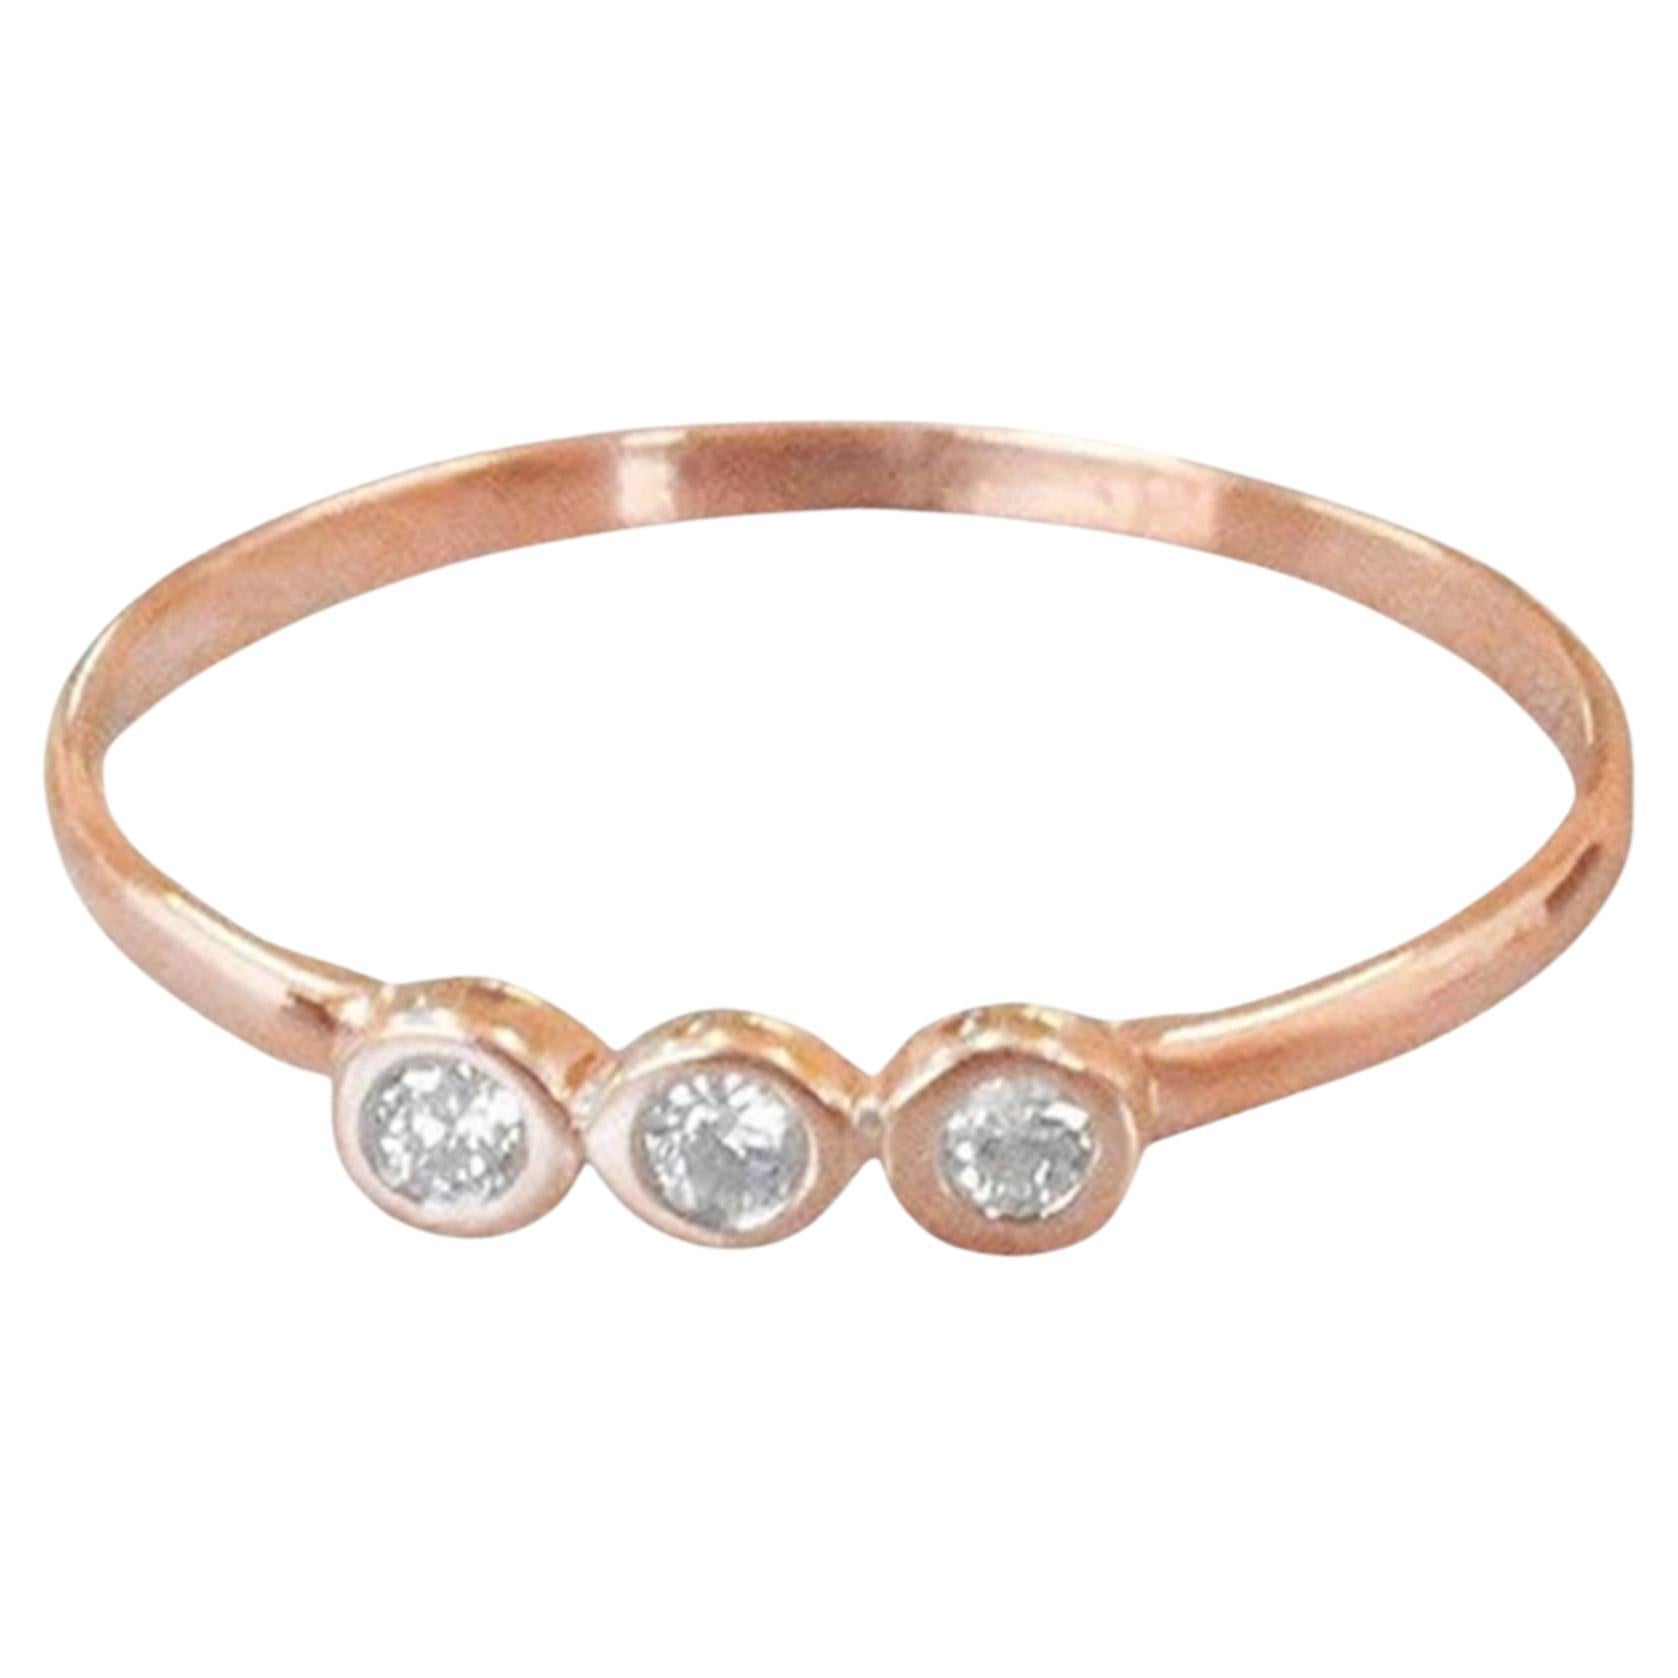 For Sale:  14k Gold Diamond 1.75 mm Ring Bezel Setting Three Diamond Ring Trio Diamond Ring